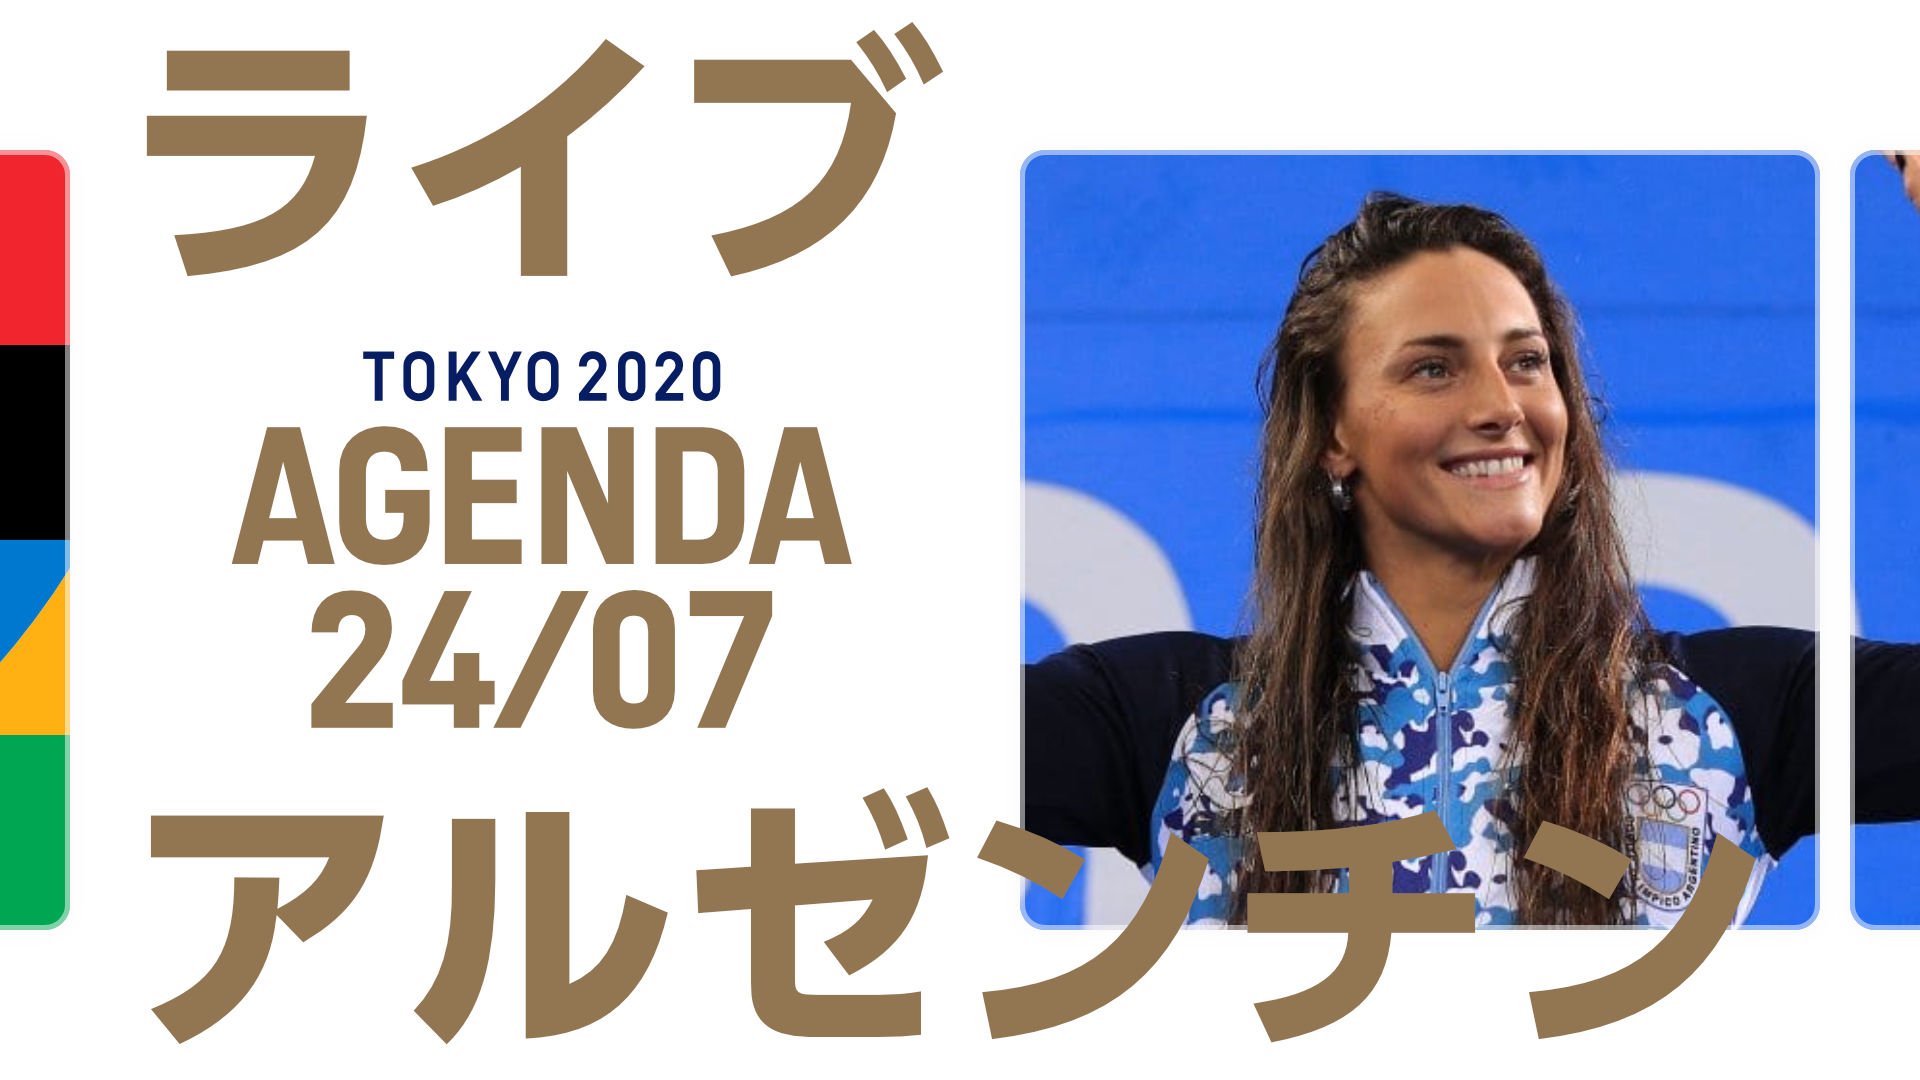 Agenda Argentina en Tokyo 2020: Quiénes compiten el 24 de julio